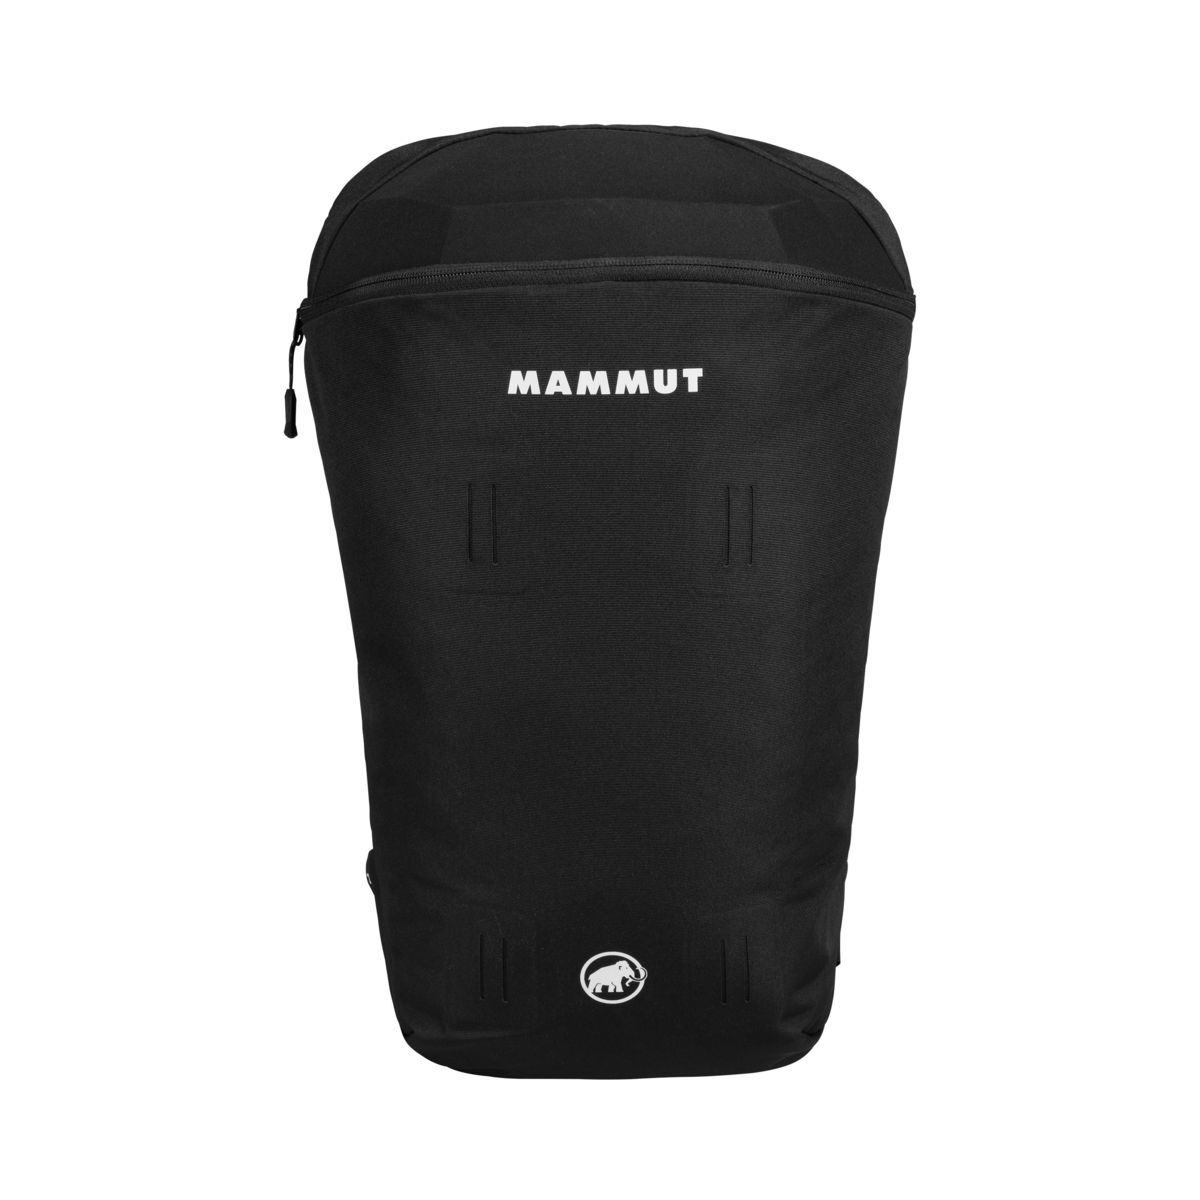 Mammut Nirvana 15 - Ski backpack